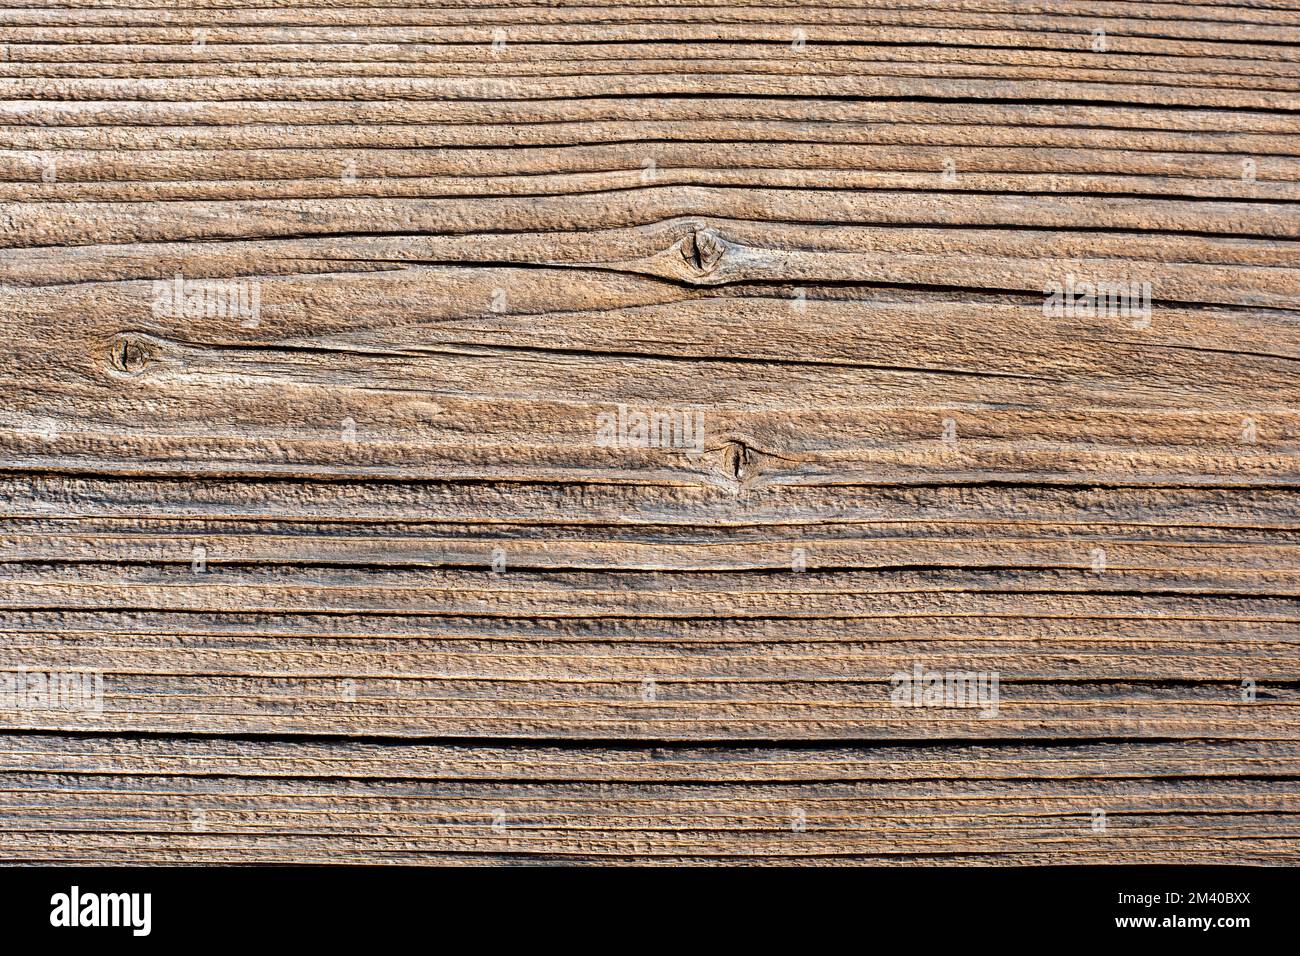 Detalle de una tabla de madera antigua, textura Stockfoto